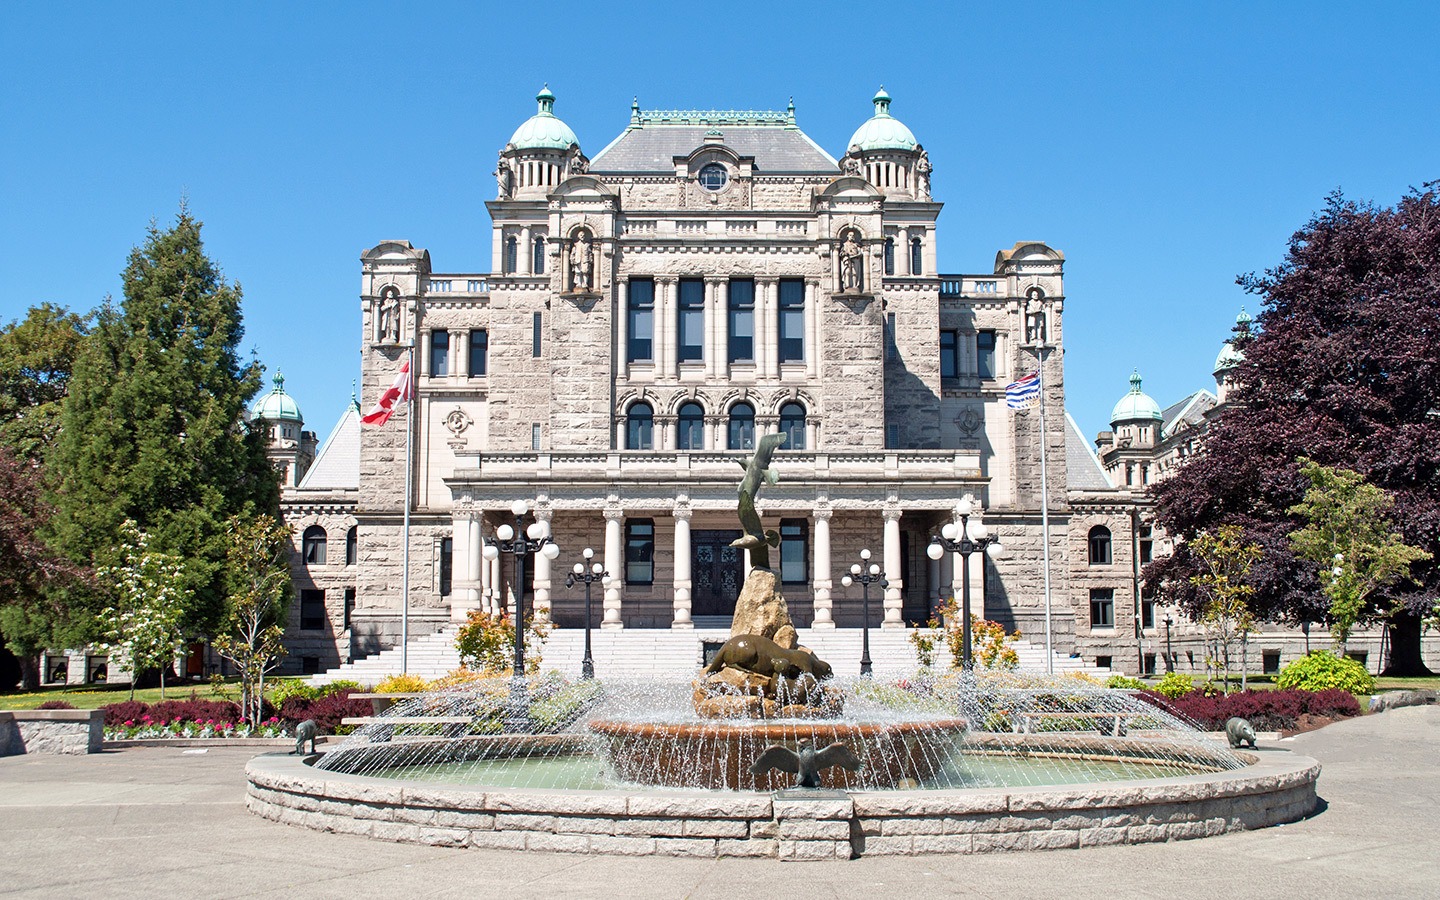 The British Columbia legislature building, Canada